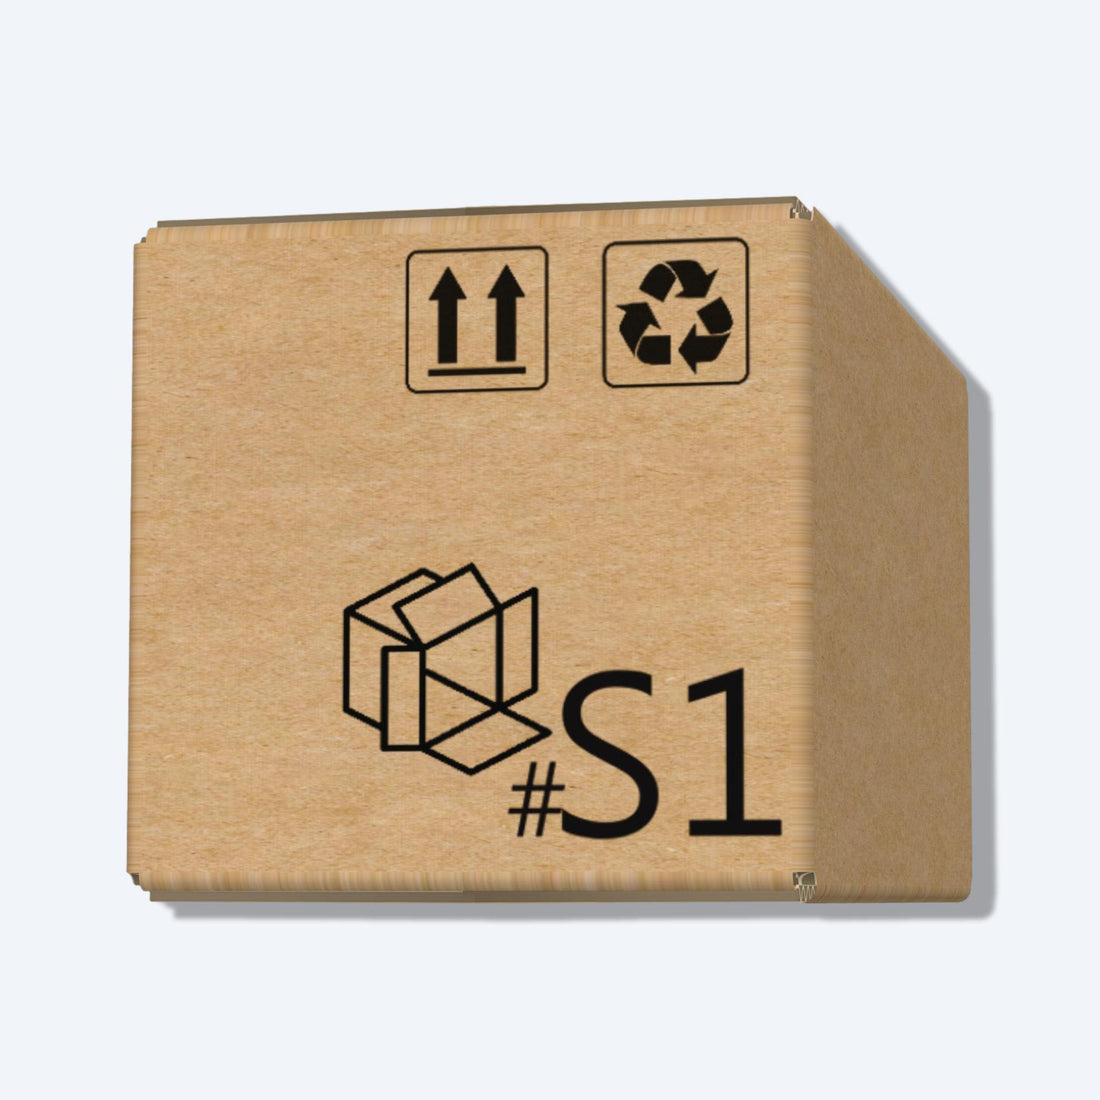 順豐速運S1尺寸紙箱側視圖，展示尺寸和質感，是適合小型物品運輸的理想選擇。